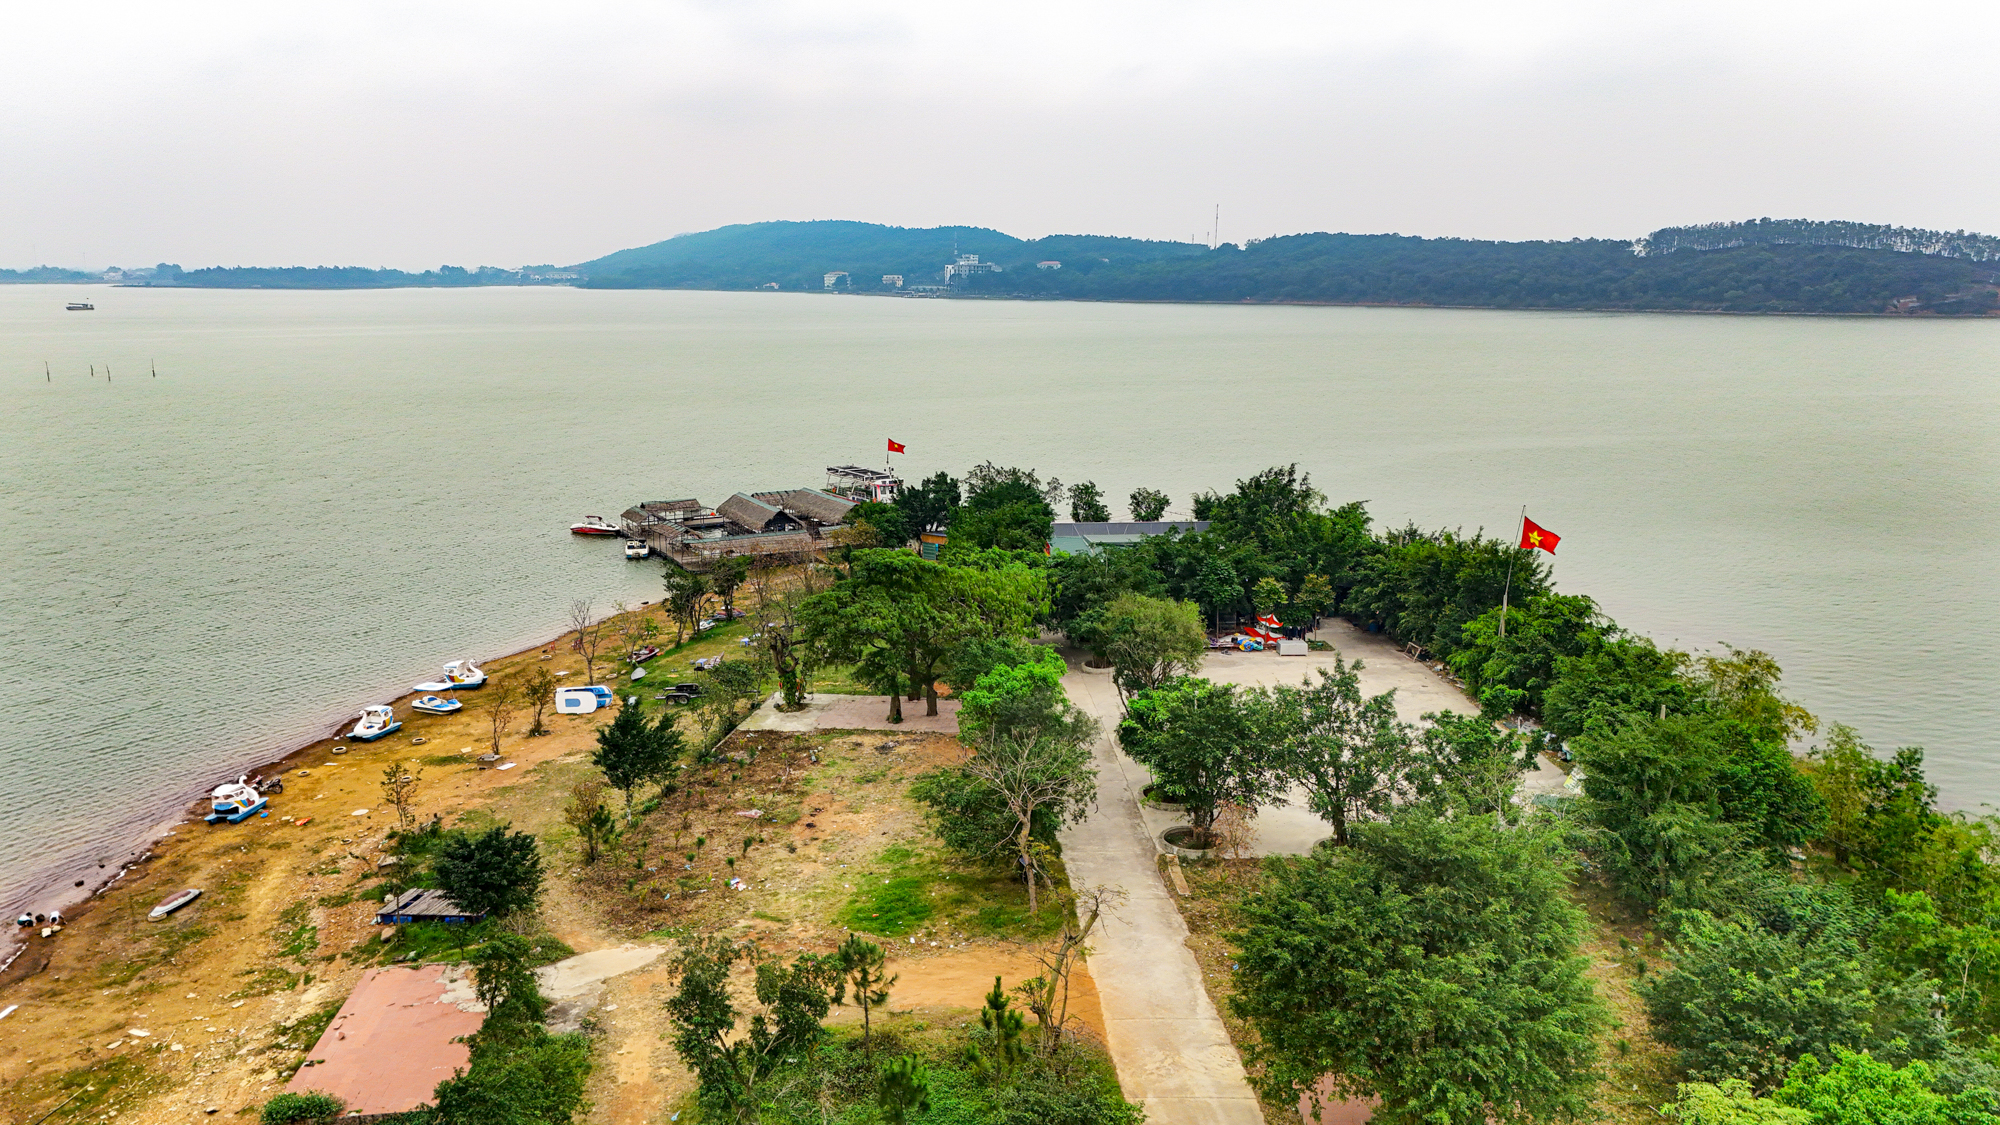 1.000 người đến vùng đất hoang đào cái hồ rộng bằng quận Hoàn Kiếm, 60 năm sau trở thành thiên đường nghỉ dưỡng ngay gần Hà Nội- Ảnh 2.